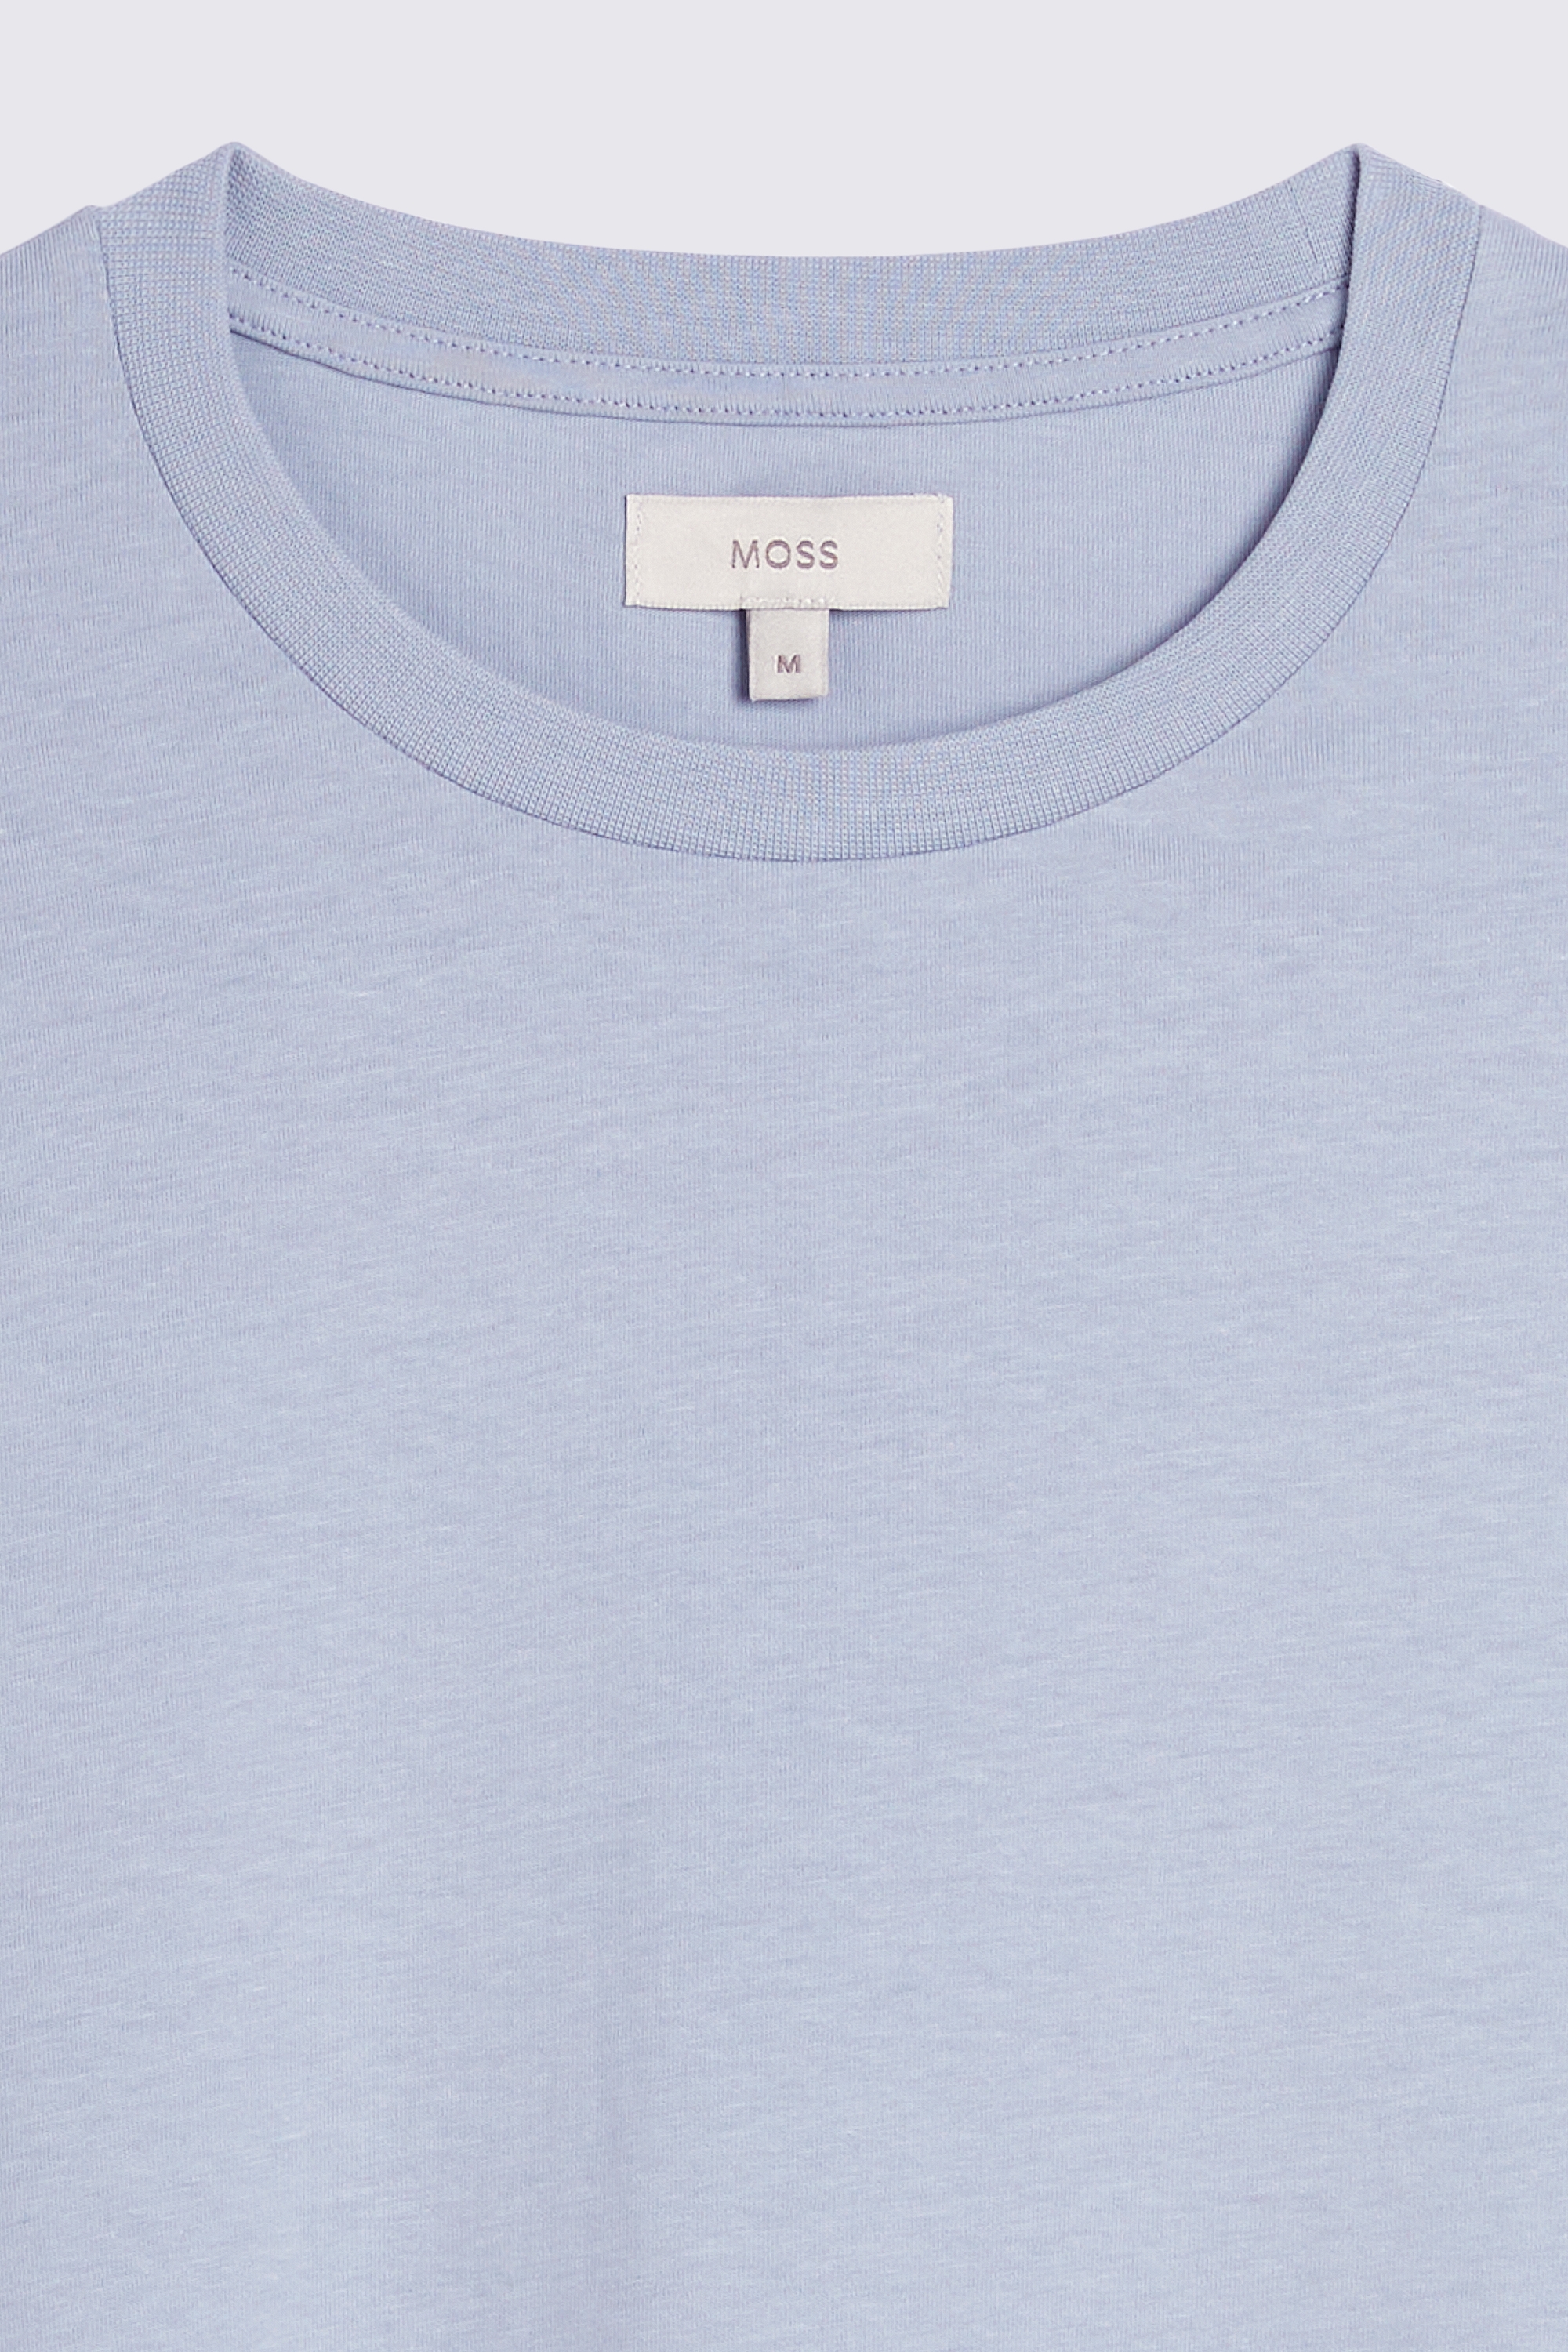 Light Blue Crew-Neck T-Shirt | Buy Online at Moss